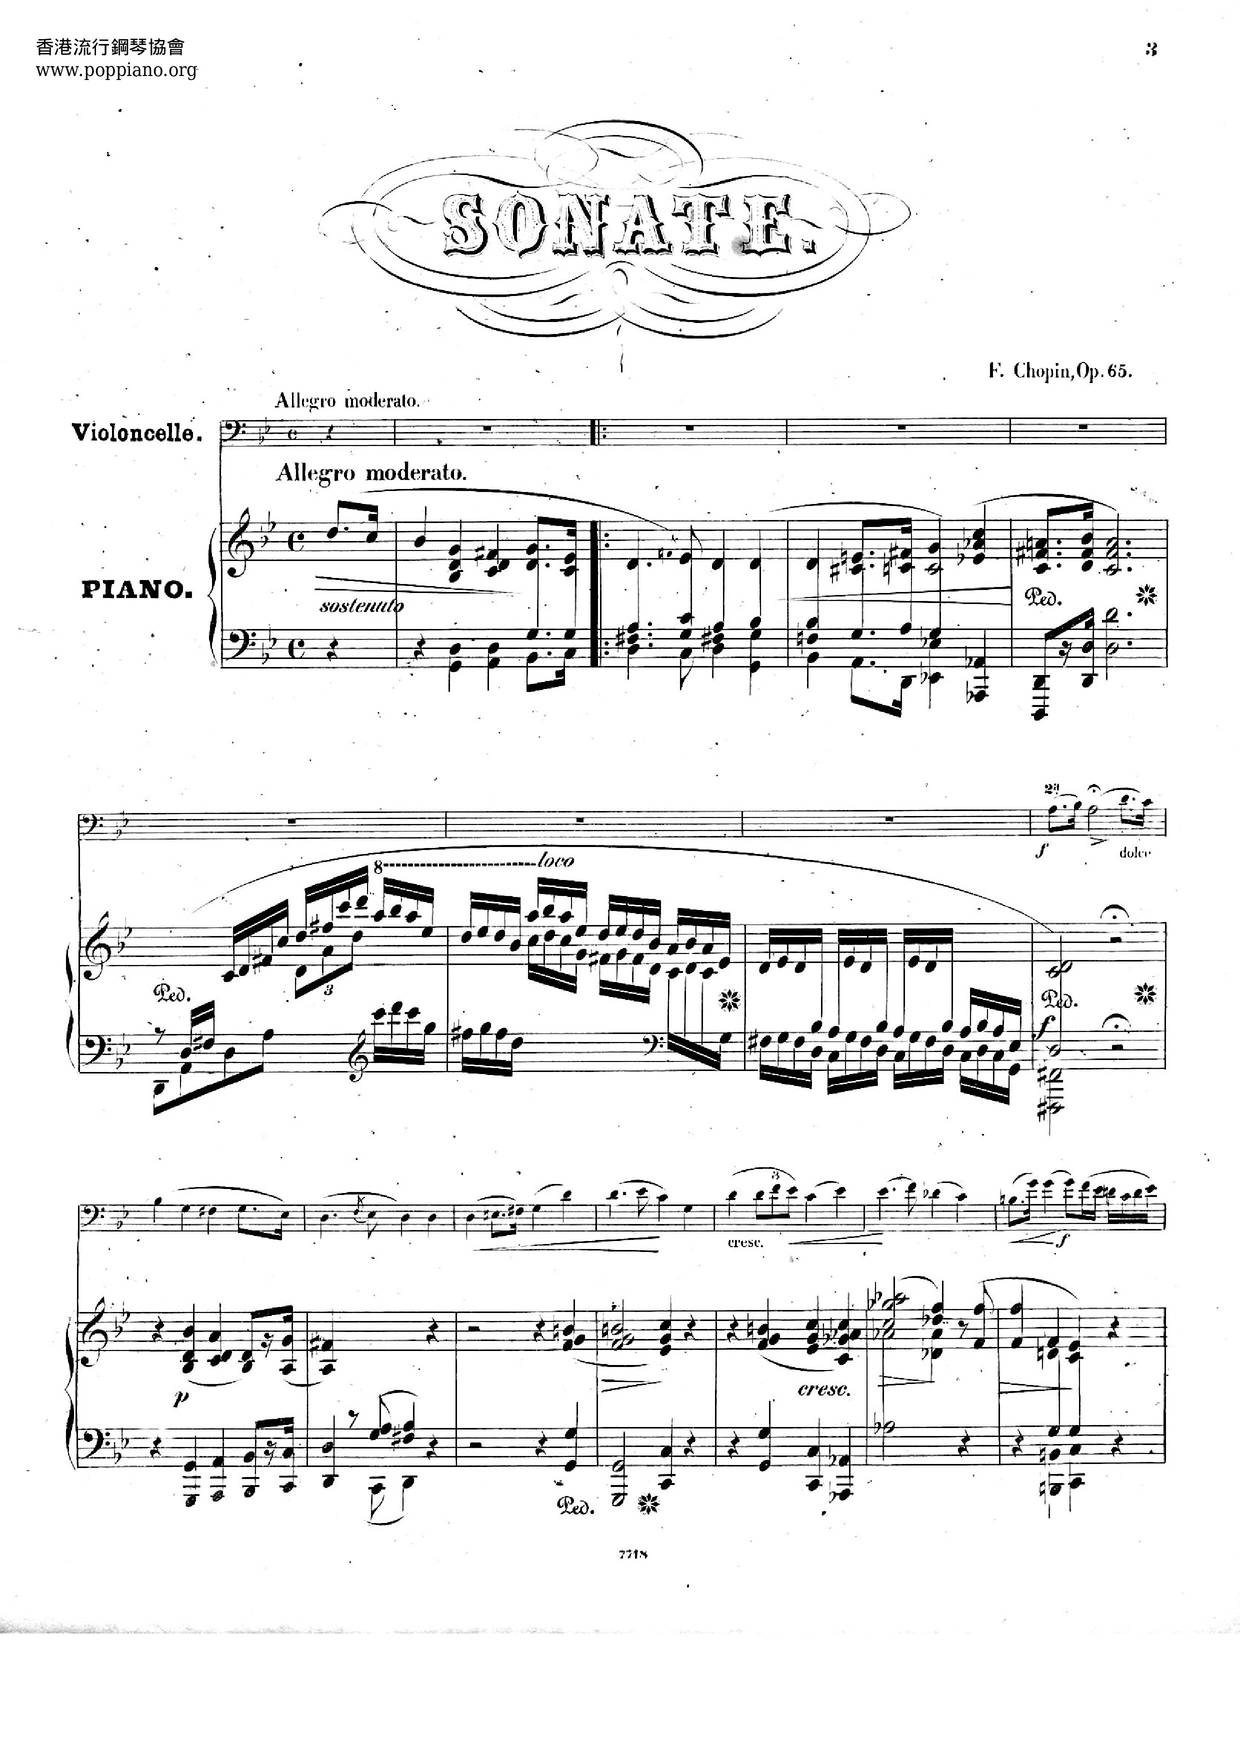 Cello Sonata In G Minor, Op. 65 Score